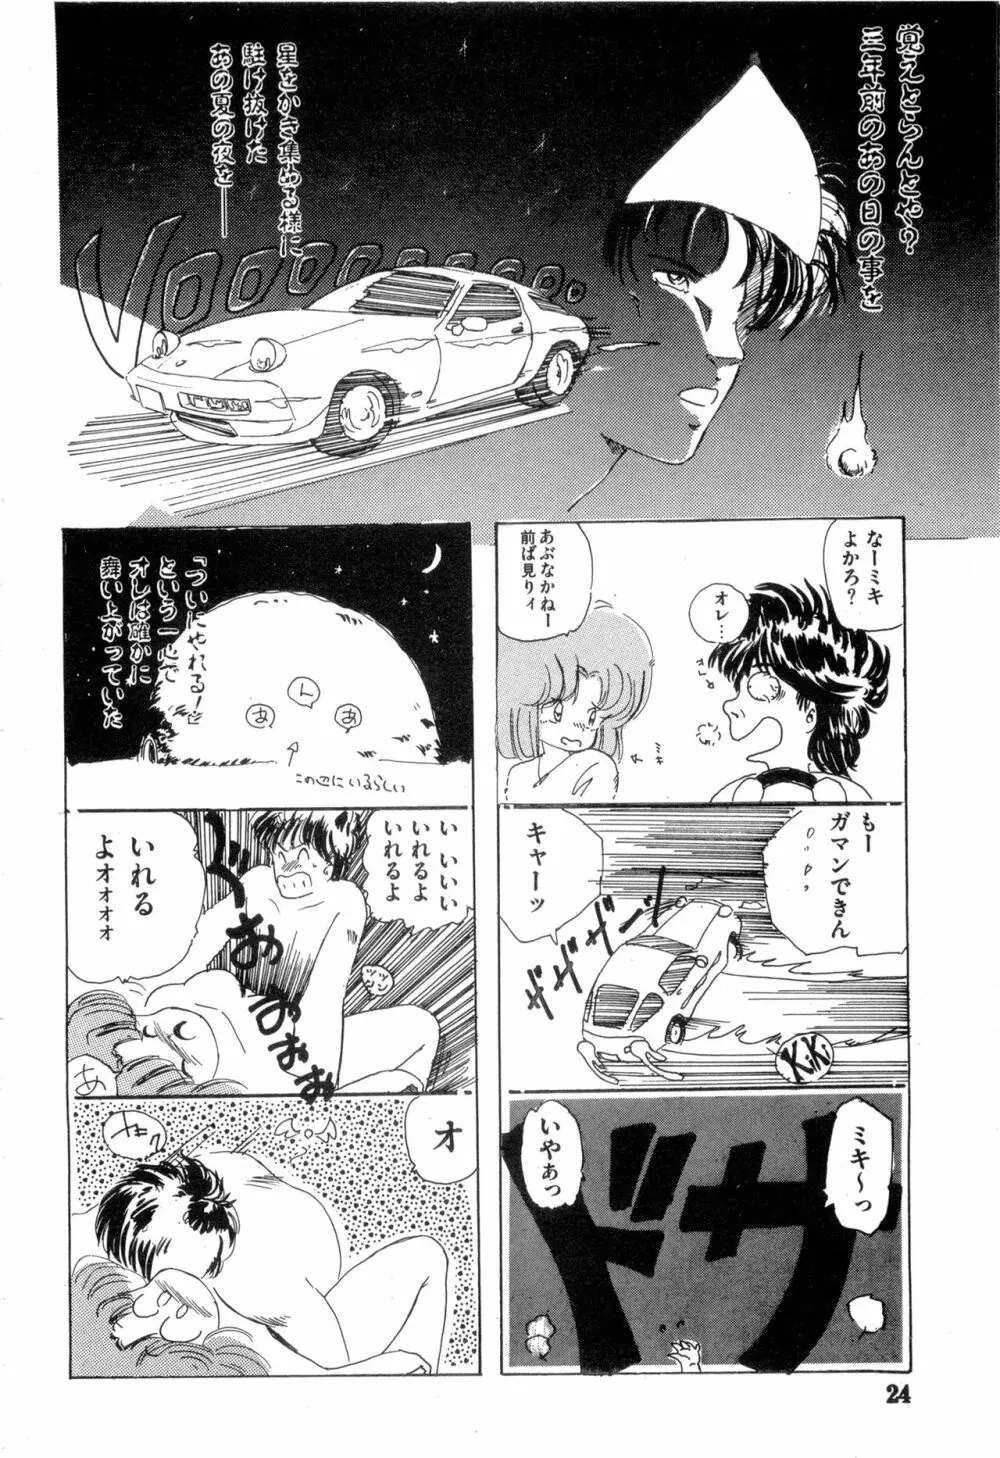 WAKE UP!! がんばれ婦警さんコミック VOL.2 24ページ